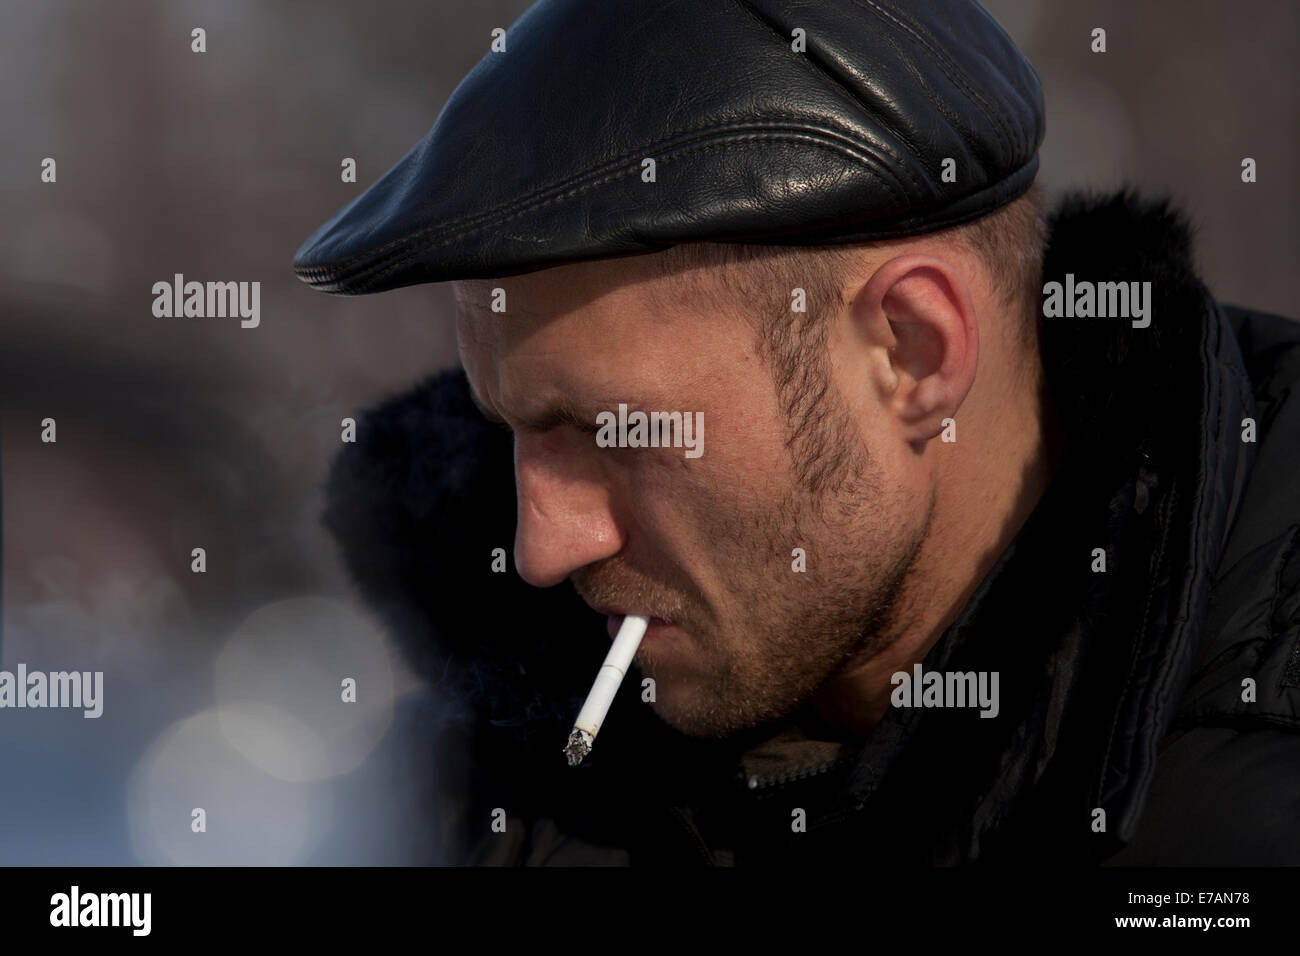 L'homme russe cool fumeurs cap cuir Banque D'Images